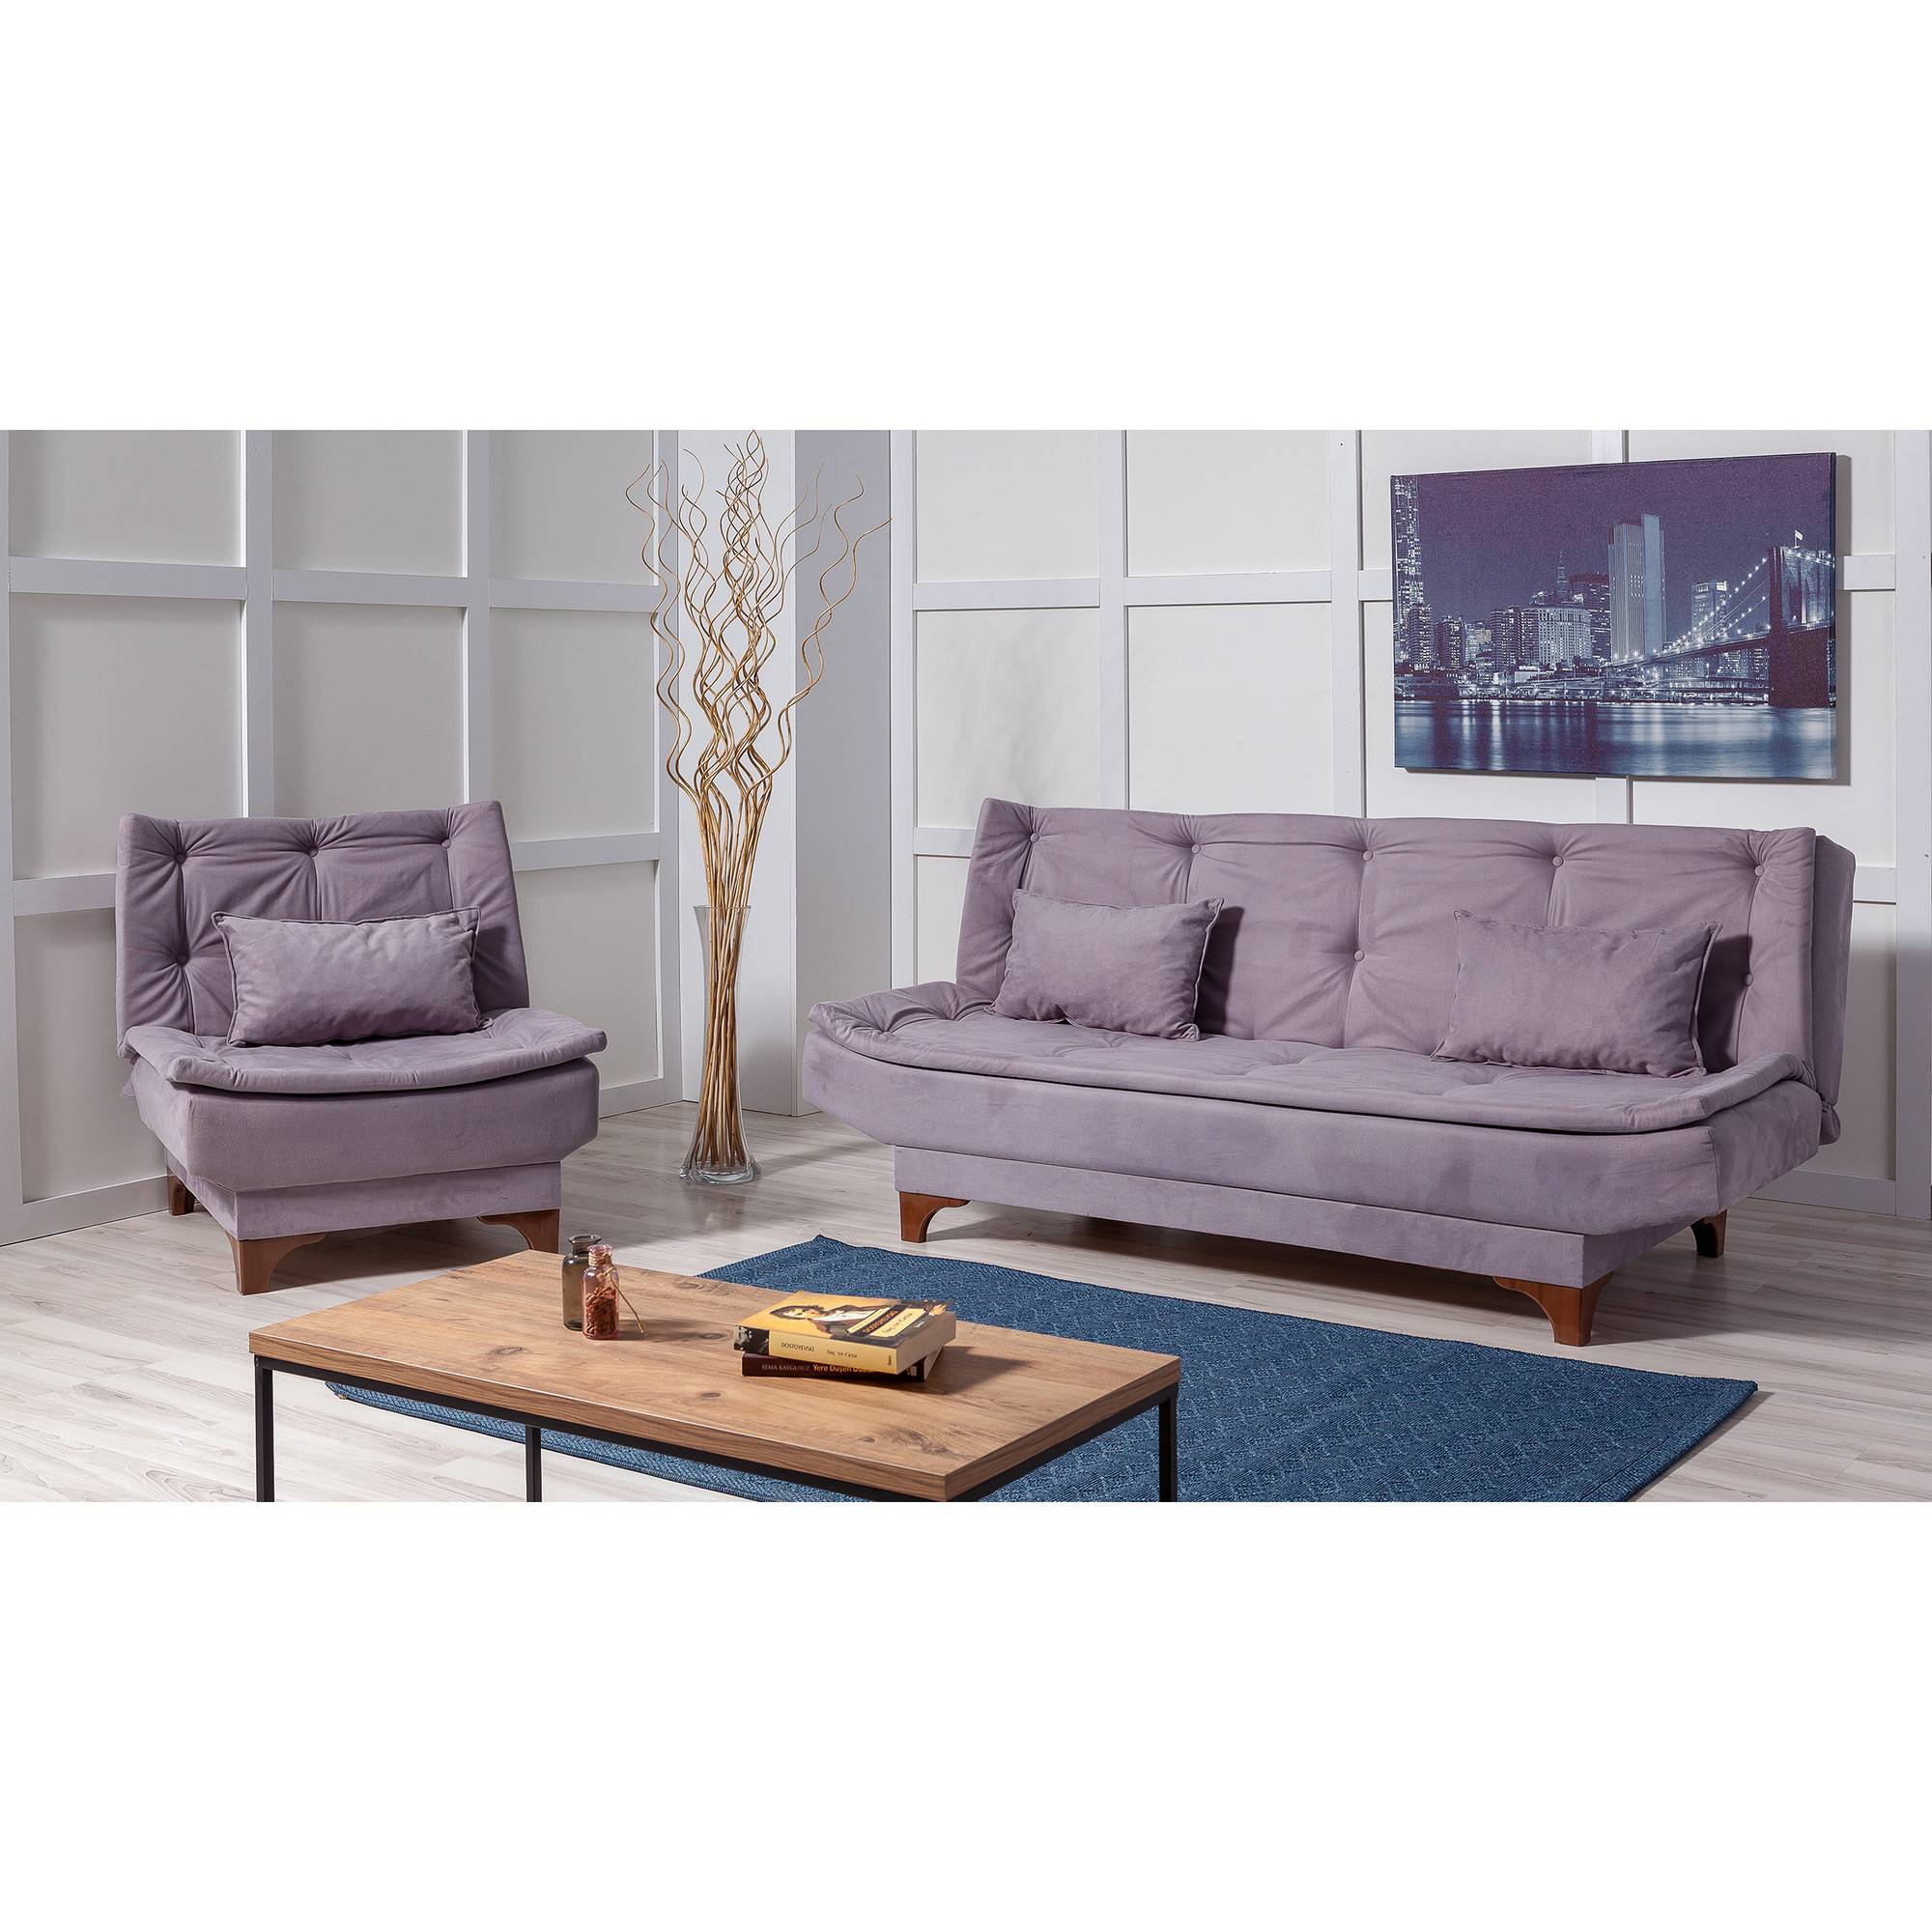 Conjunto de sofá y sillón convertible de 2 plazas Lefkada tejido burdeos